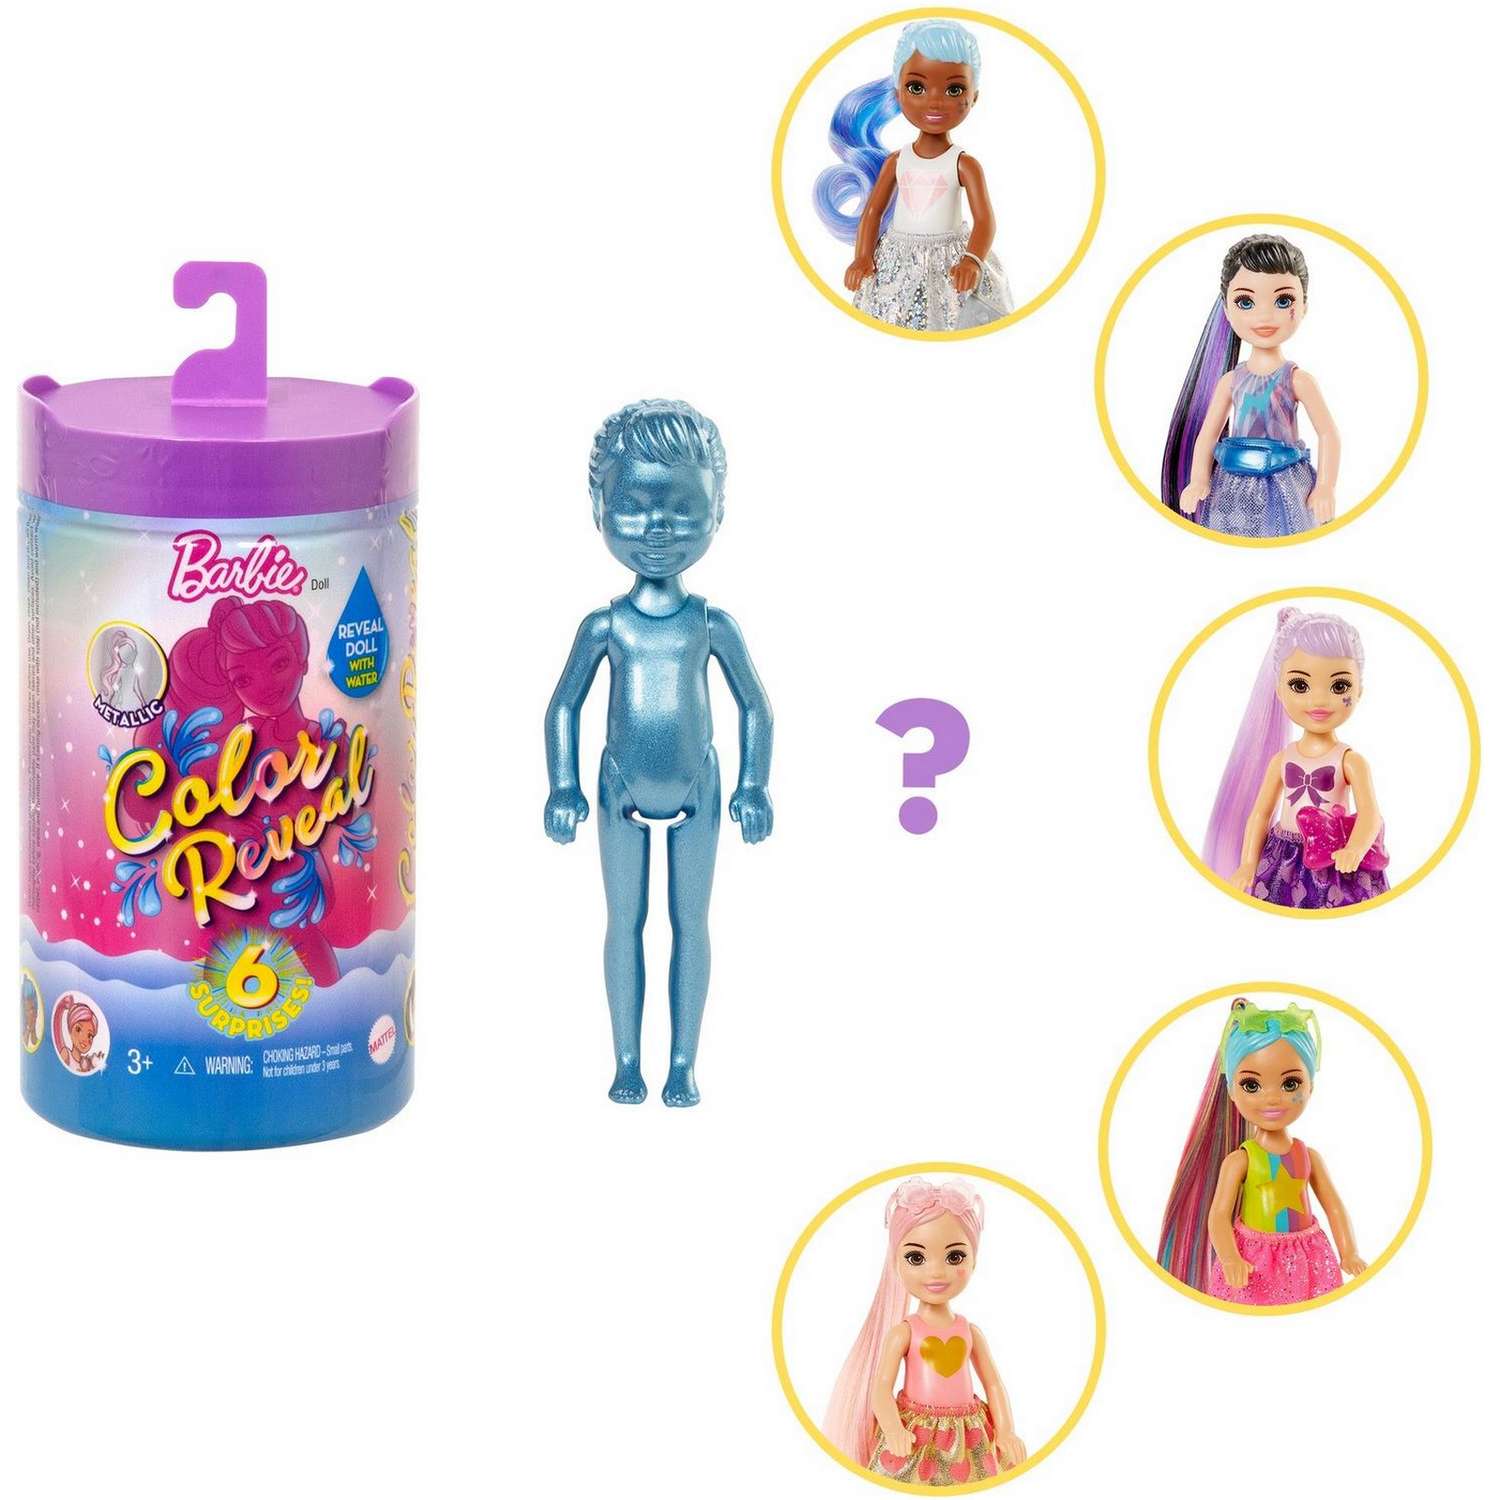 Набор Barbie Челси В1 кукла +аксессуары в непрозрачной упаковке (Сюрприз) GWC59 GTT23 - фото 7